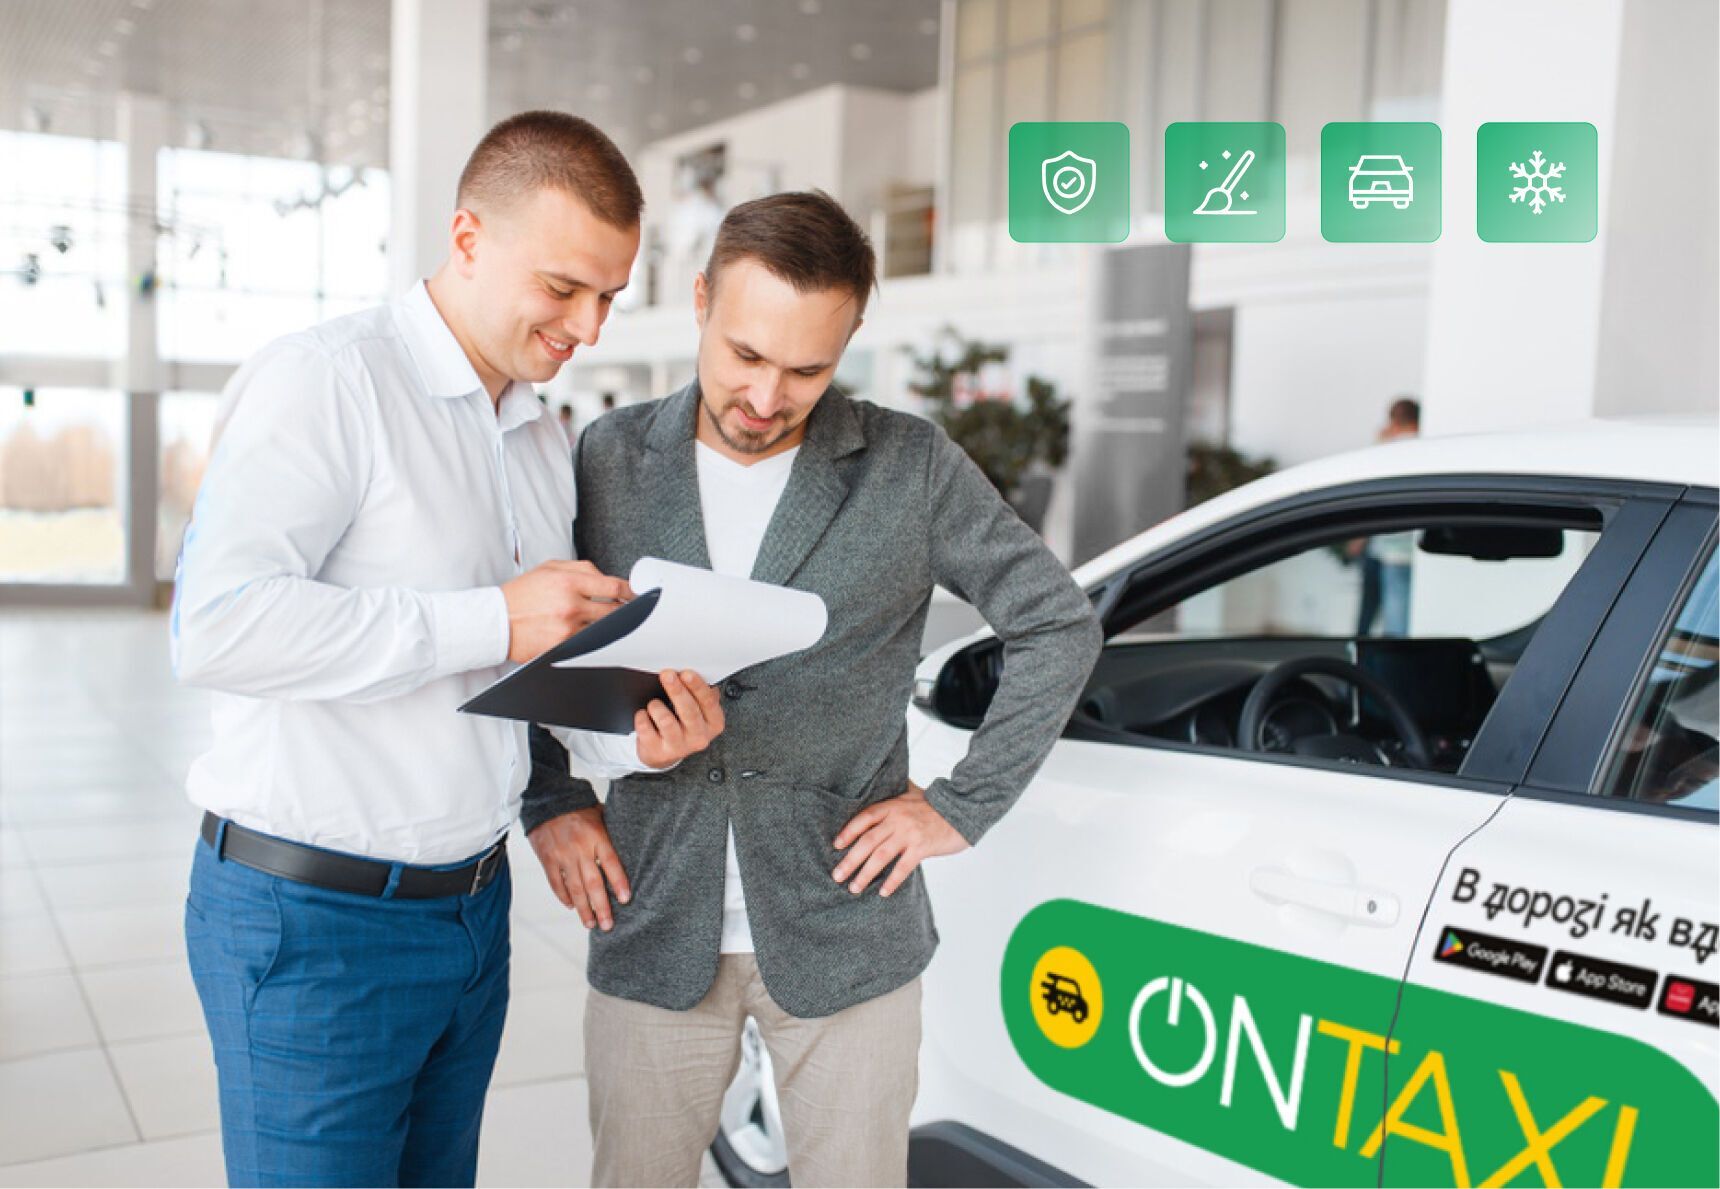 Безопасность имеет значение: всеукраинский сервис вызова авто OnTaxi поделился правилами и требованиями к водителям